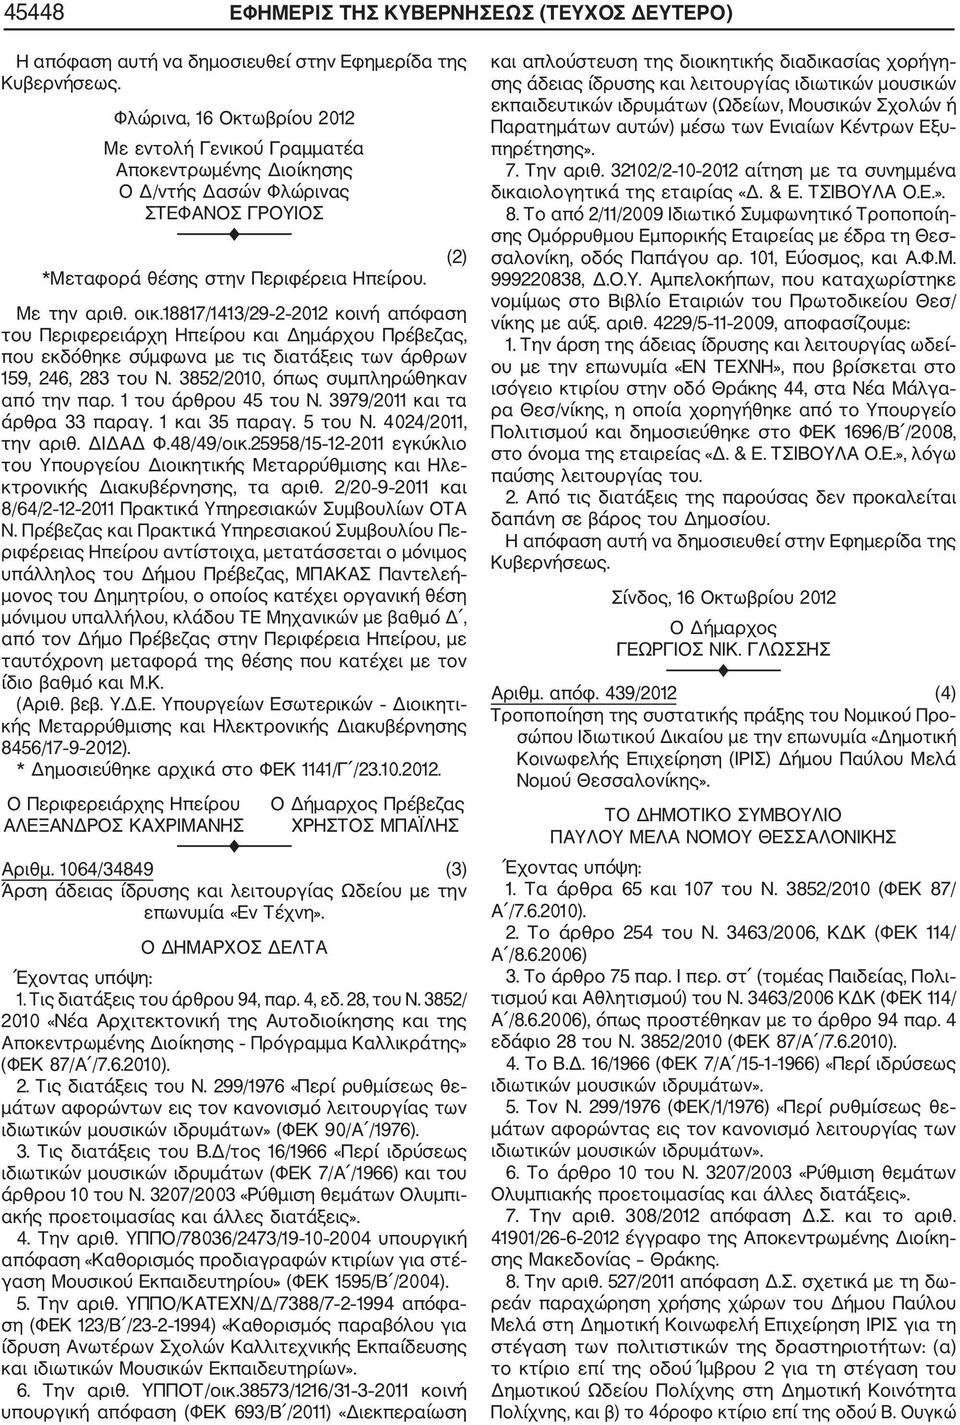 18817/1413/29 2 2012 κοινή απόφαση του Περιφερειάρχη Ηπείρου και Δημάρχου Πρέβεζας, που εκδόθηκε σύμφωνα με τις διατάξεις των άρθρων 159, 246, 283 του Ν. 3852/2010, όπως συμπληρώθηκαν από την παρ.